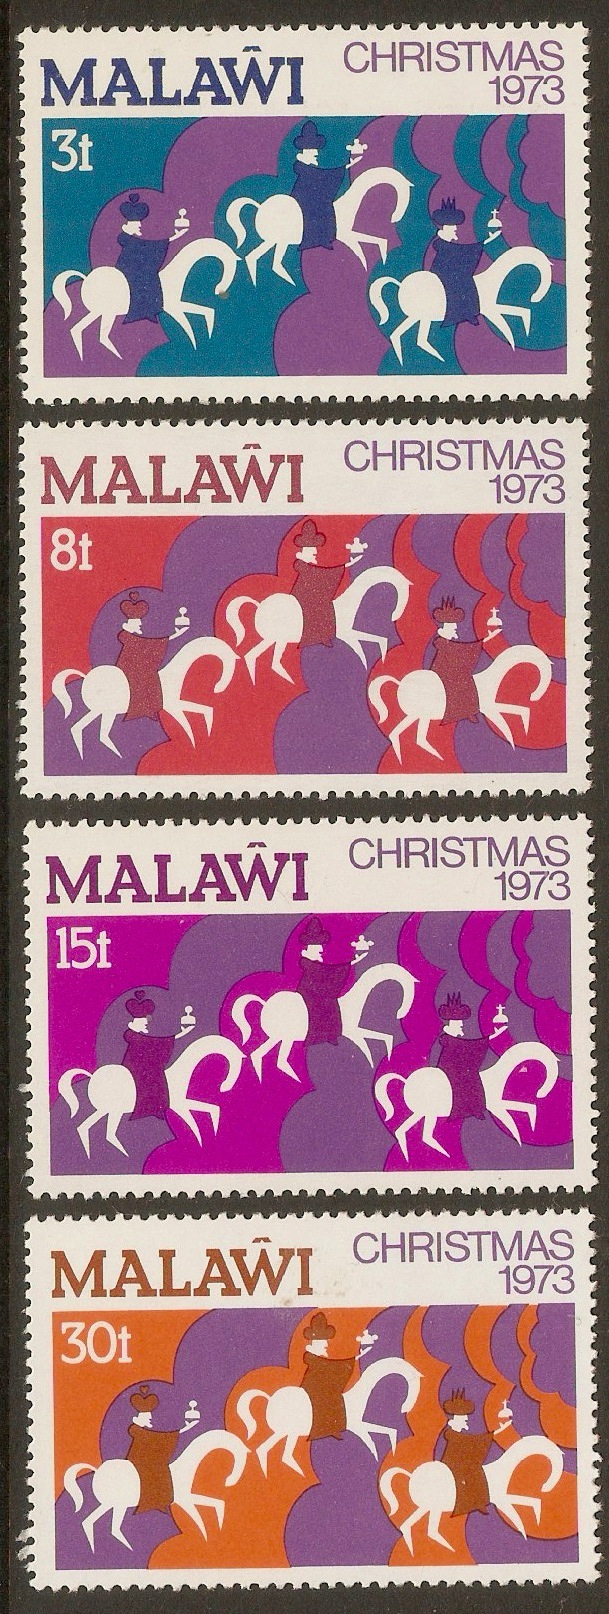 Malawi 1973 Christmas set. SG445-SG448.